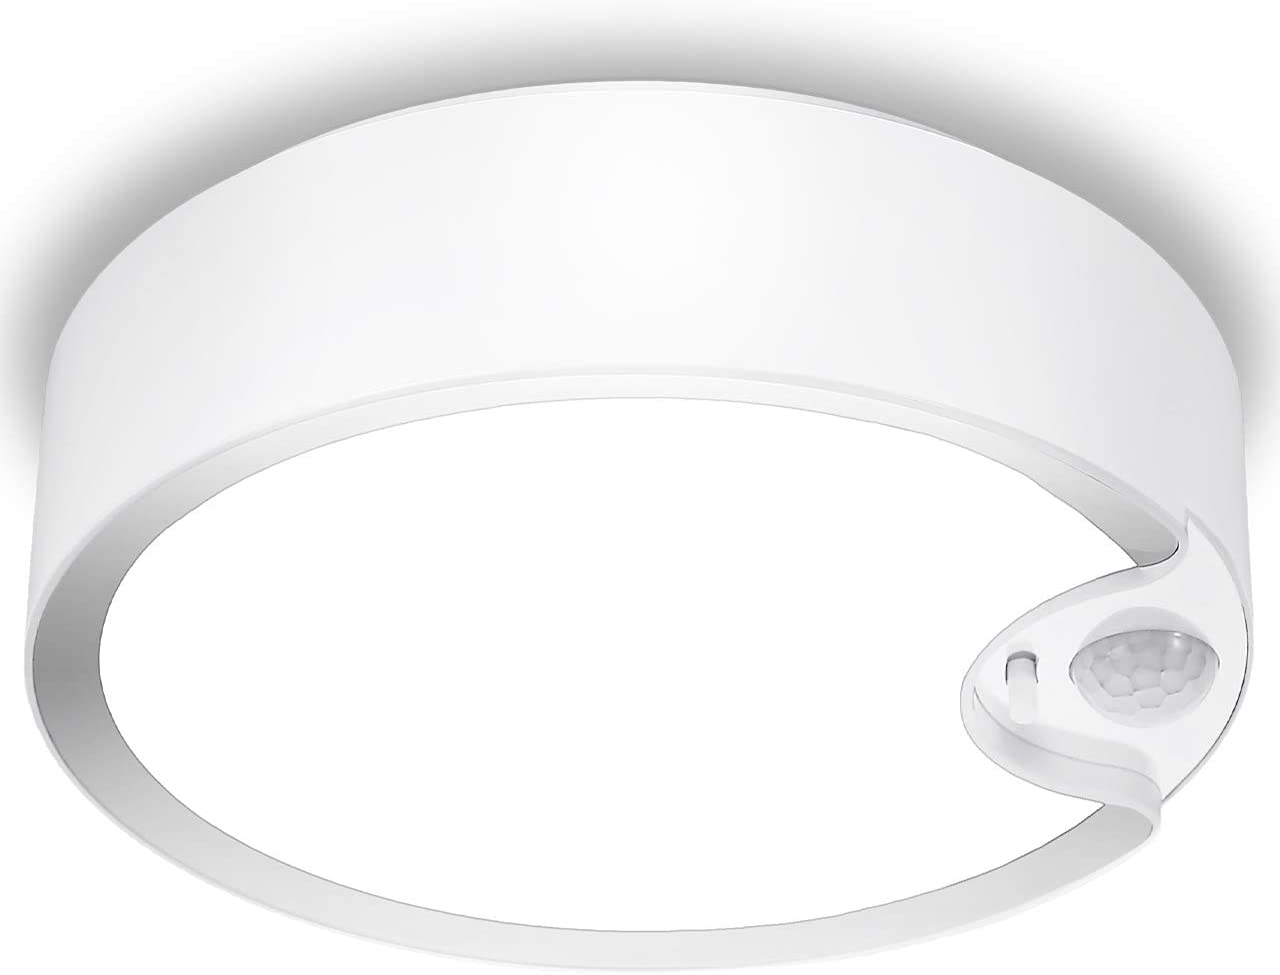 Sunvie Motion Sensor Ceiling Light